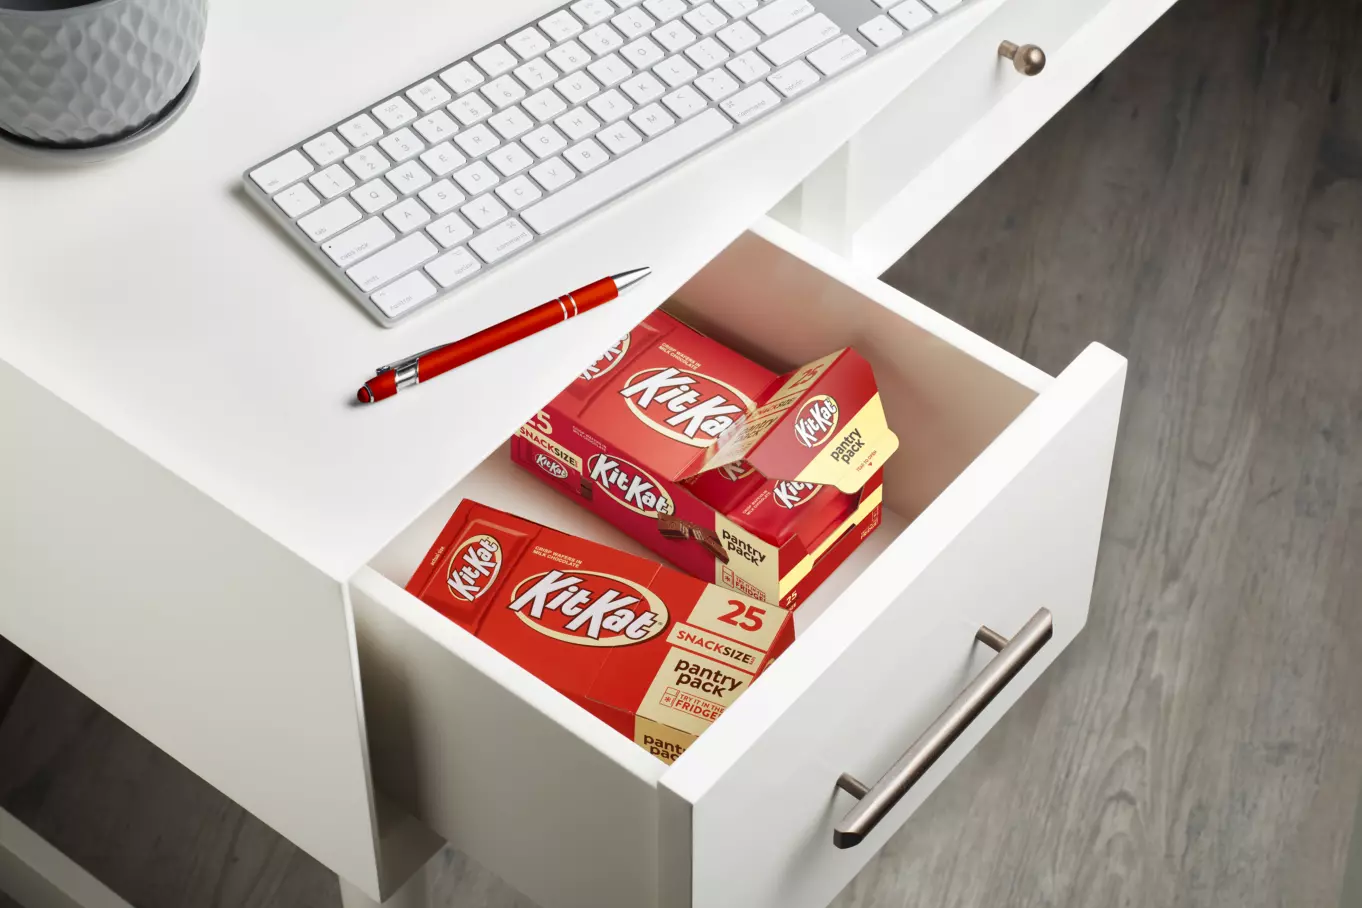 KIT KAT® Pantry Pack inside office desk drawer